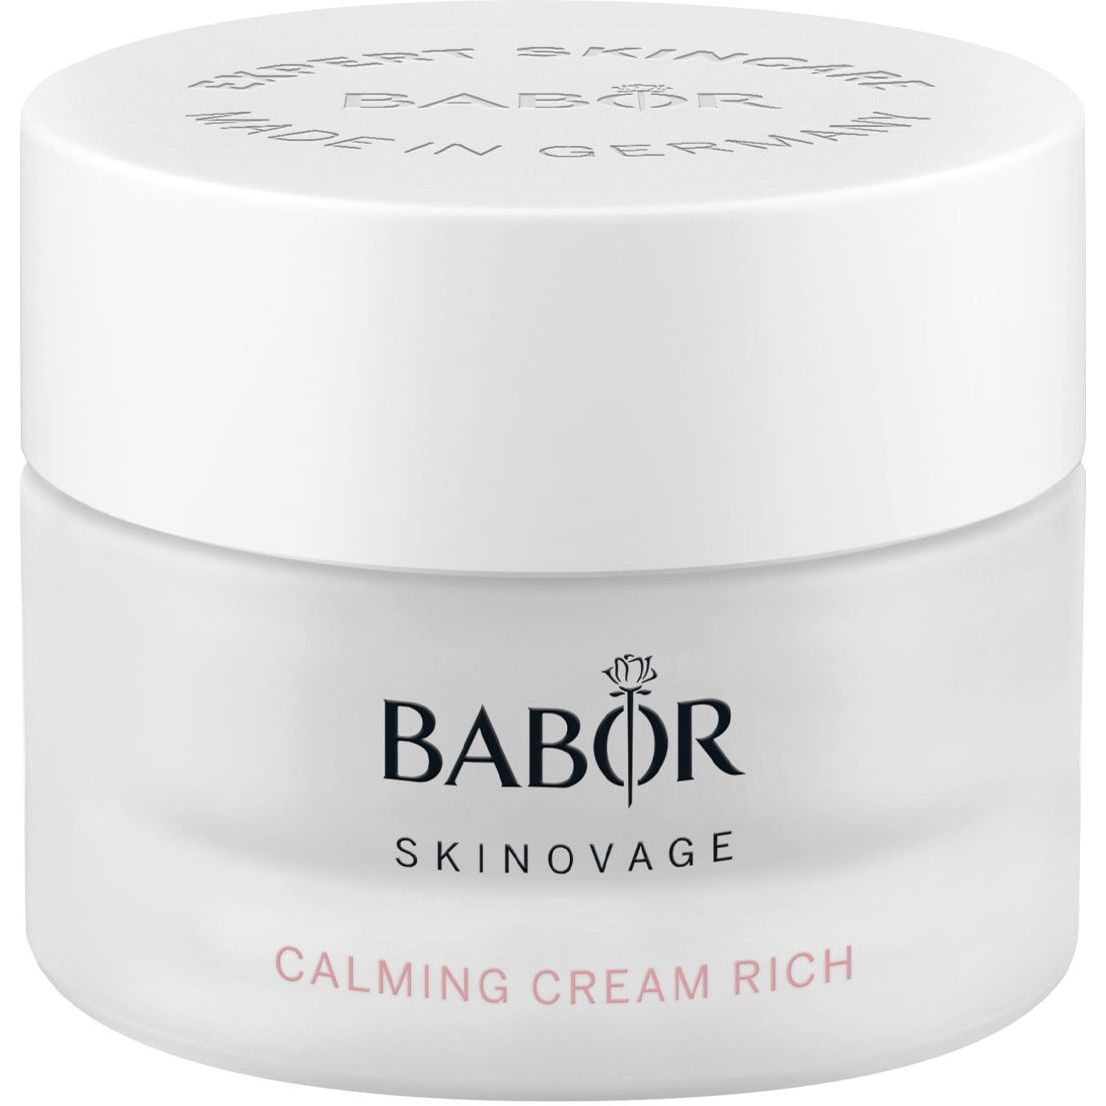 Крем для чувствительной кожи Babor Skinovage Calming Cream Rich 50 мл - фото 1